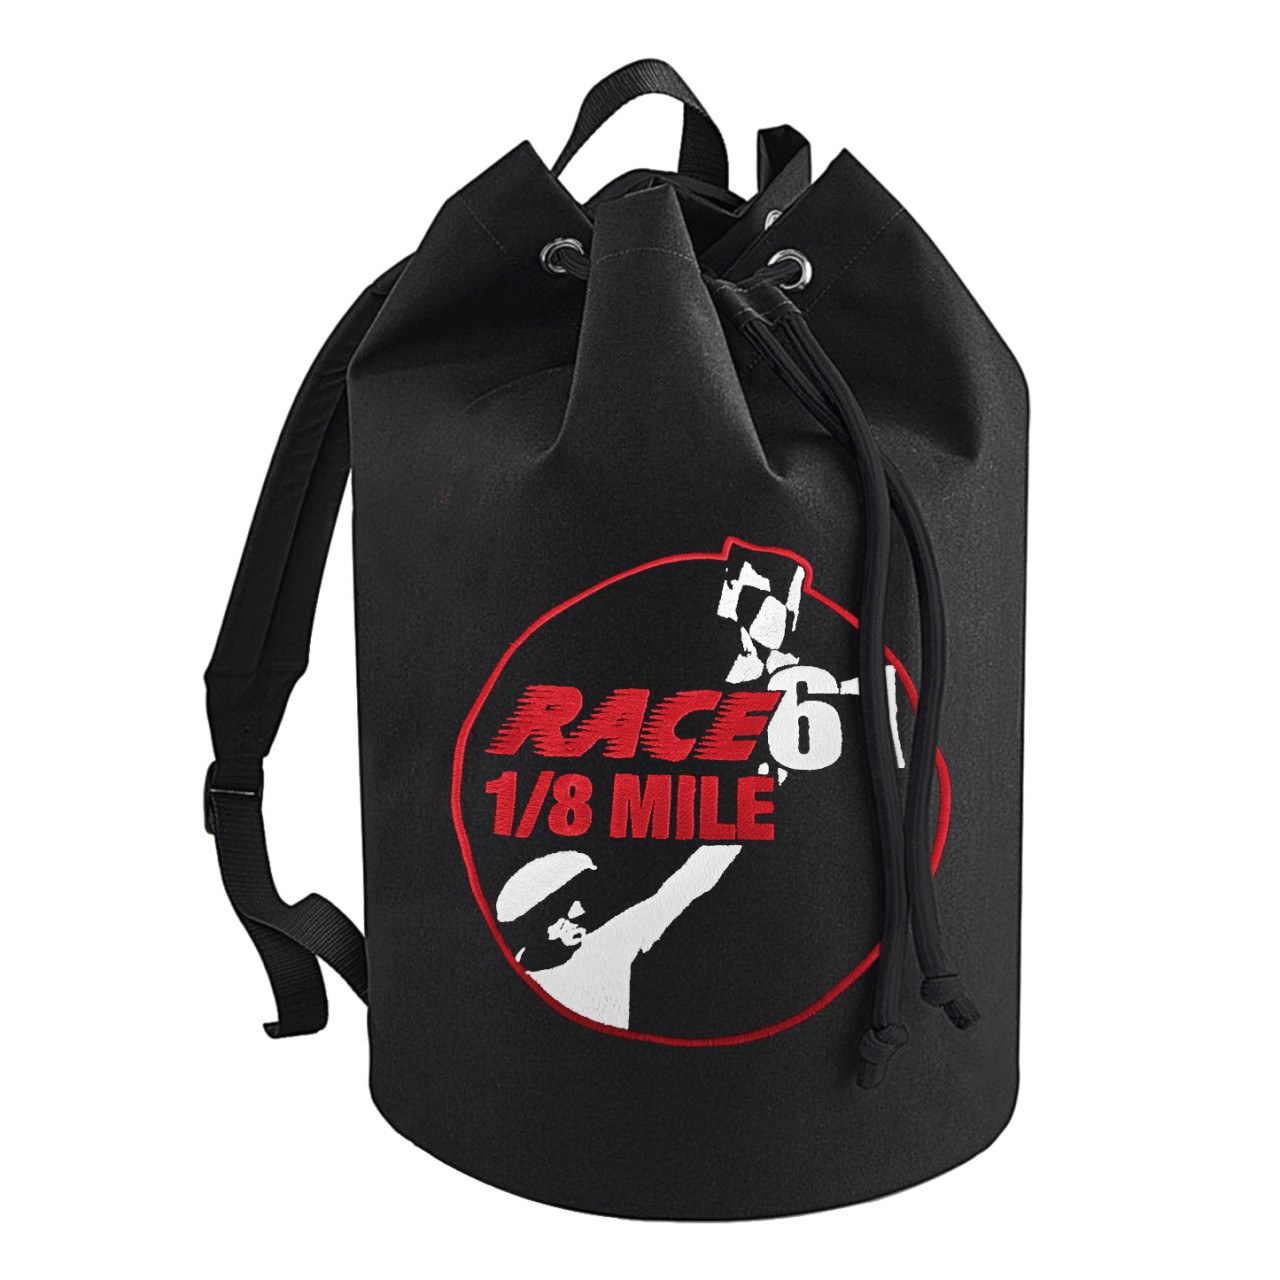 Race 61 Seesack - Rucksack in schwarz Race61 1/8 Mile Logo